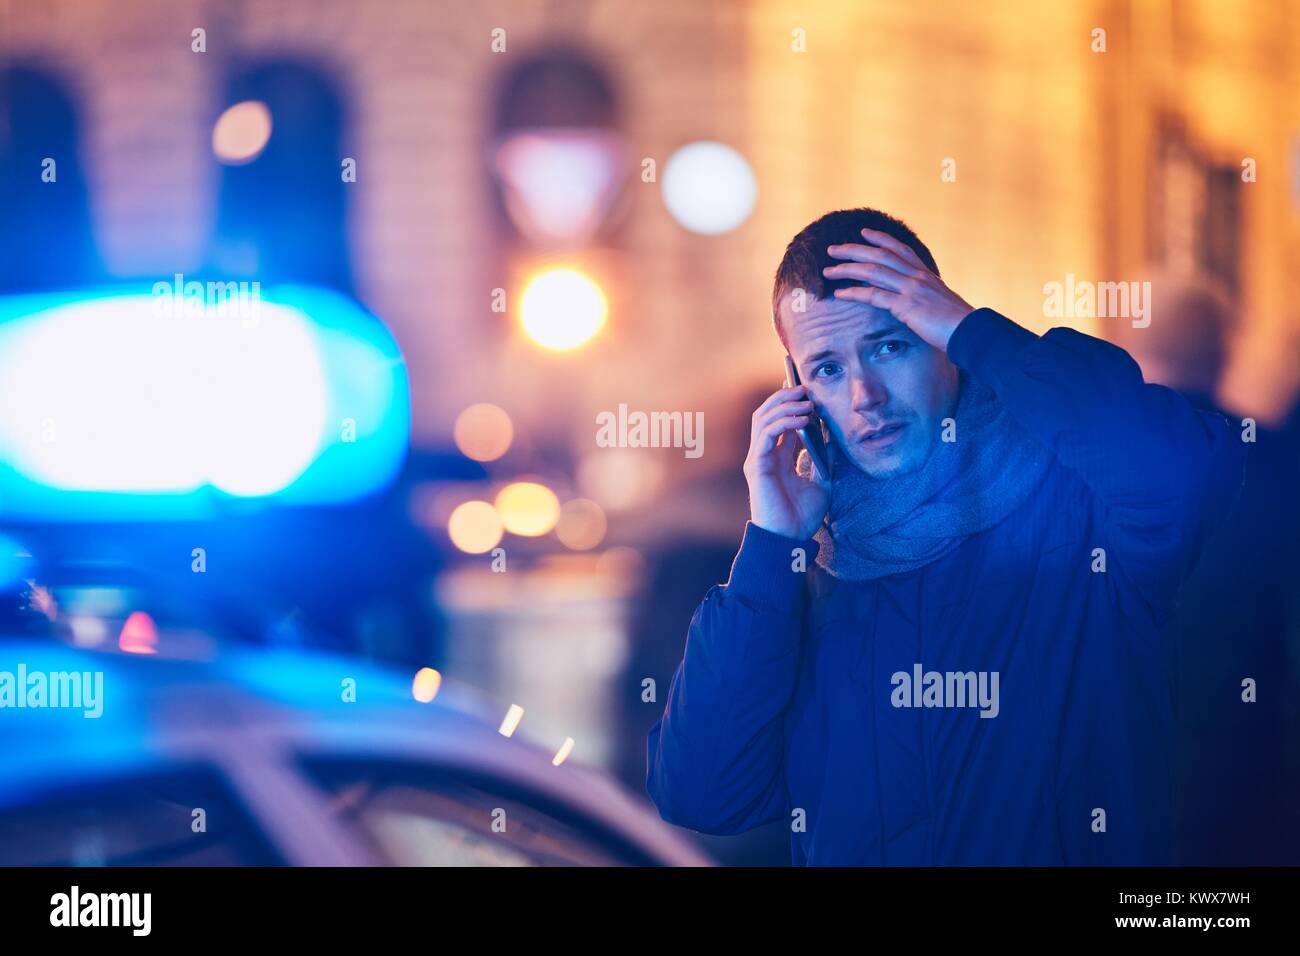 Giovane uomo della chiamata dopo una situazione di crisi sulla strada della citta'. Temi crimine, il servizio di emergenza medica, la paura o la guida. Foto Stock